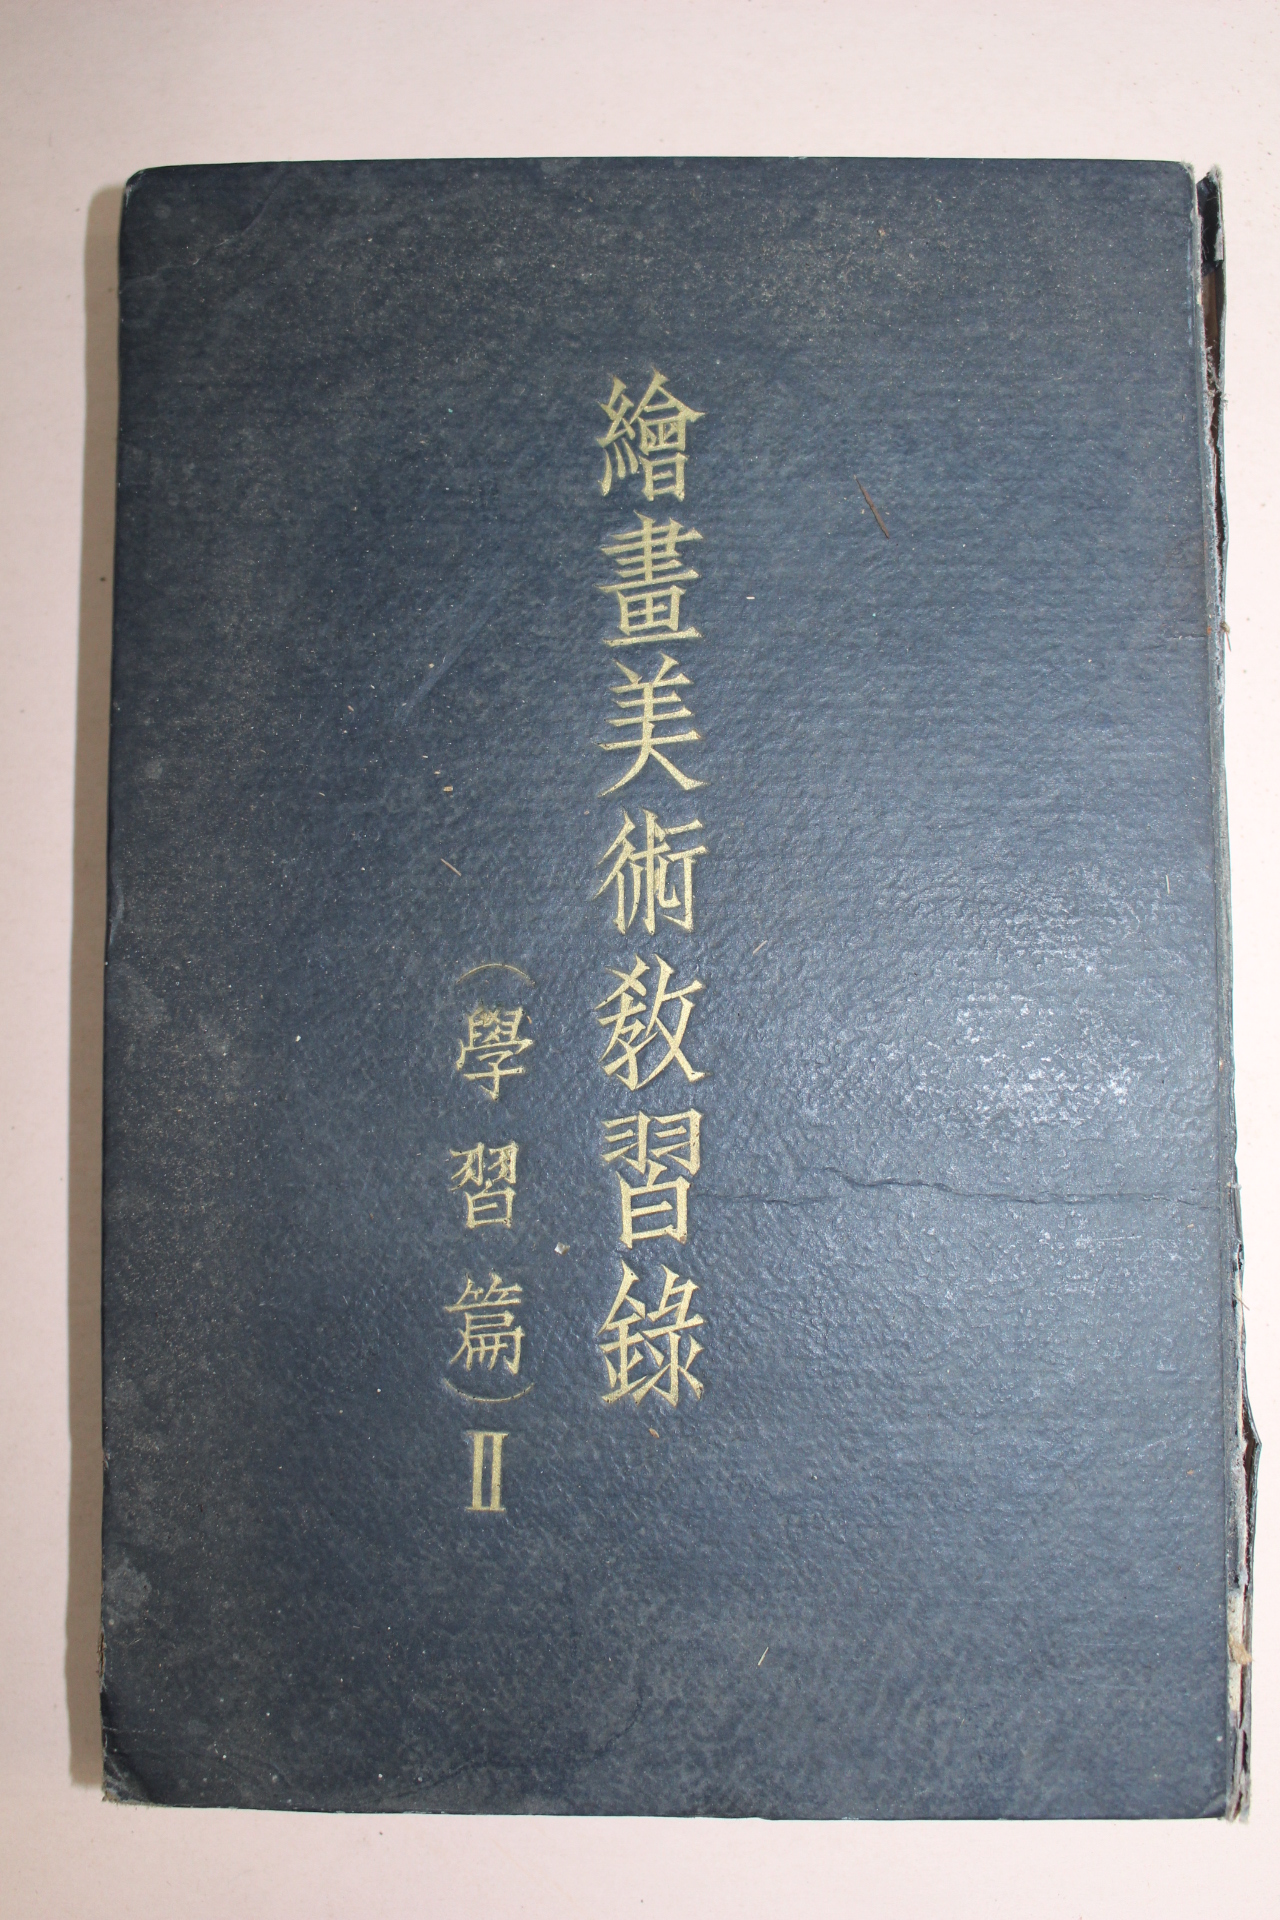 1939년(소화14년) 일본간행 회화미술교습록(繪畵美術敎習錄)